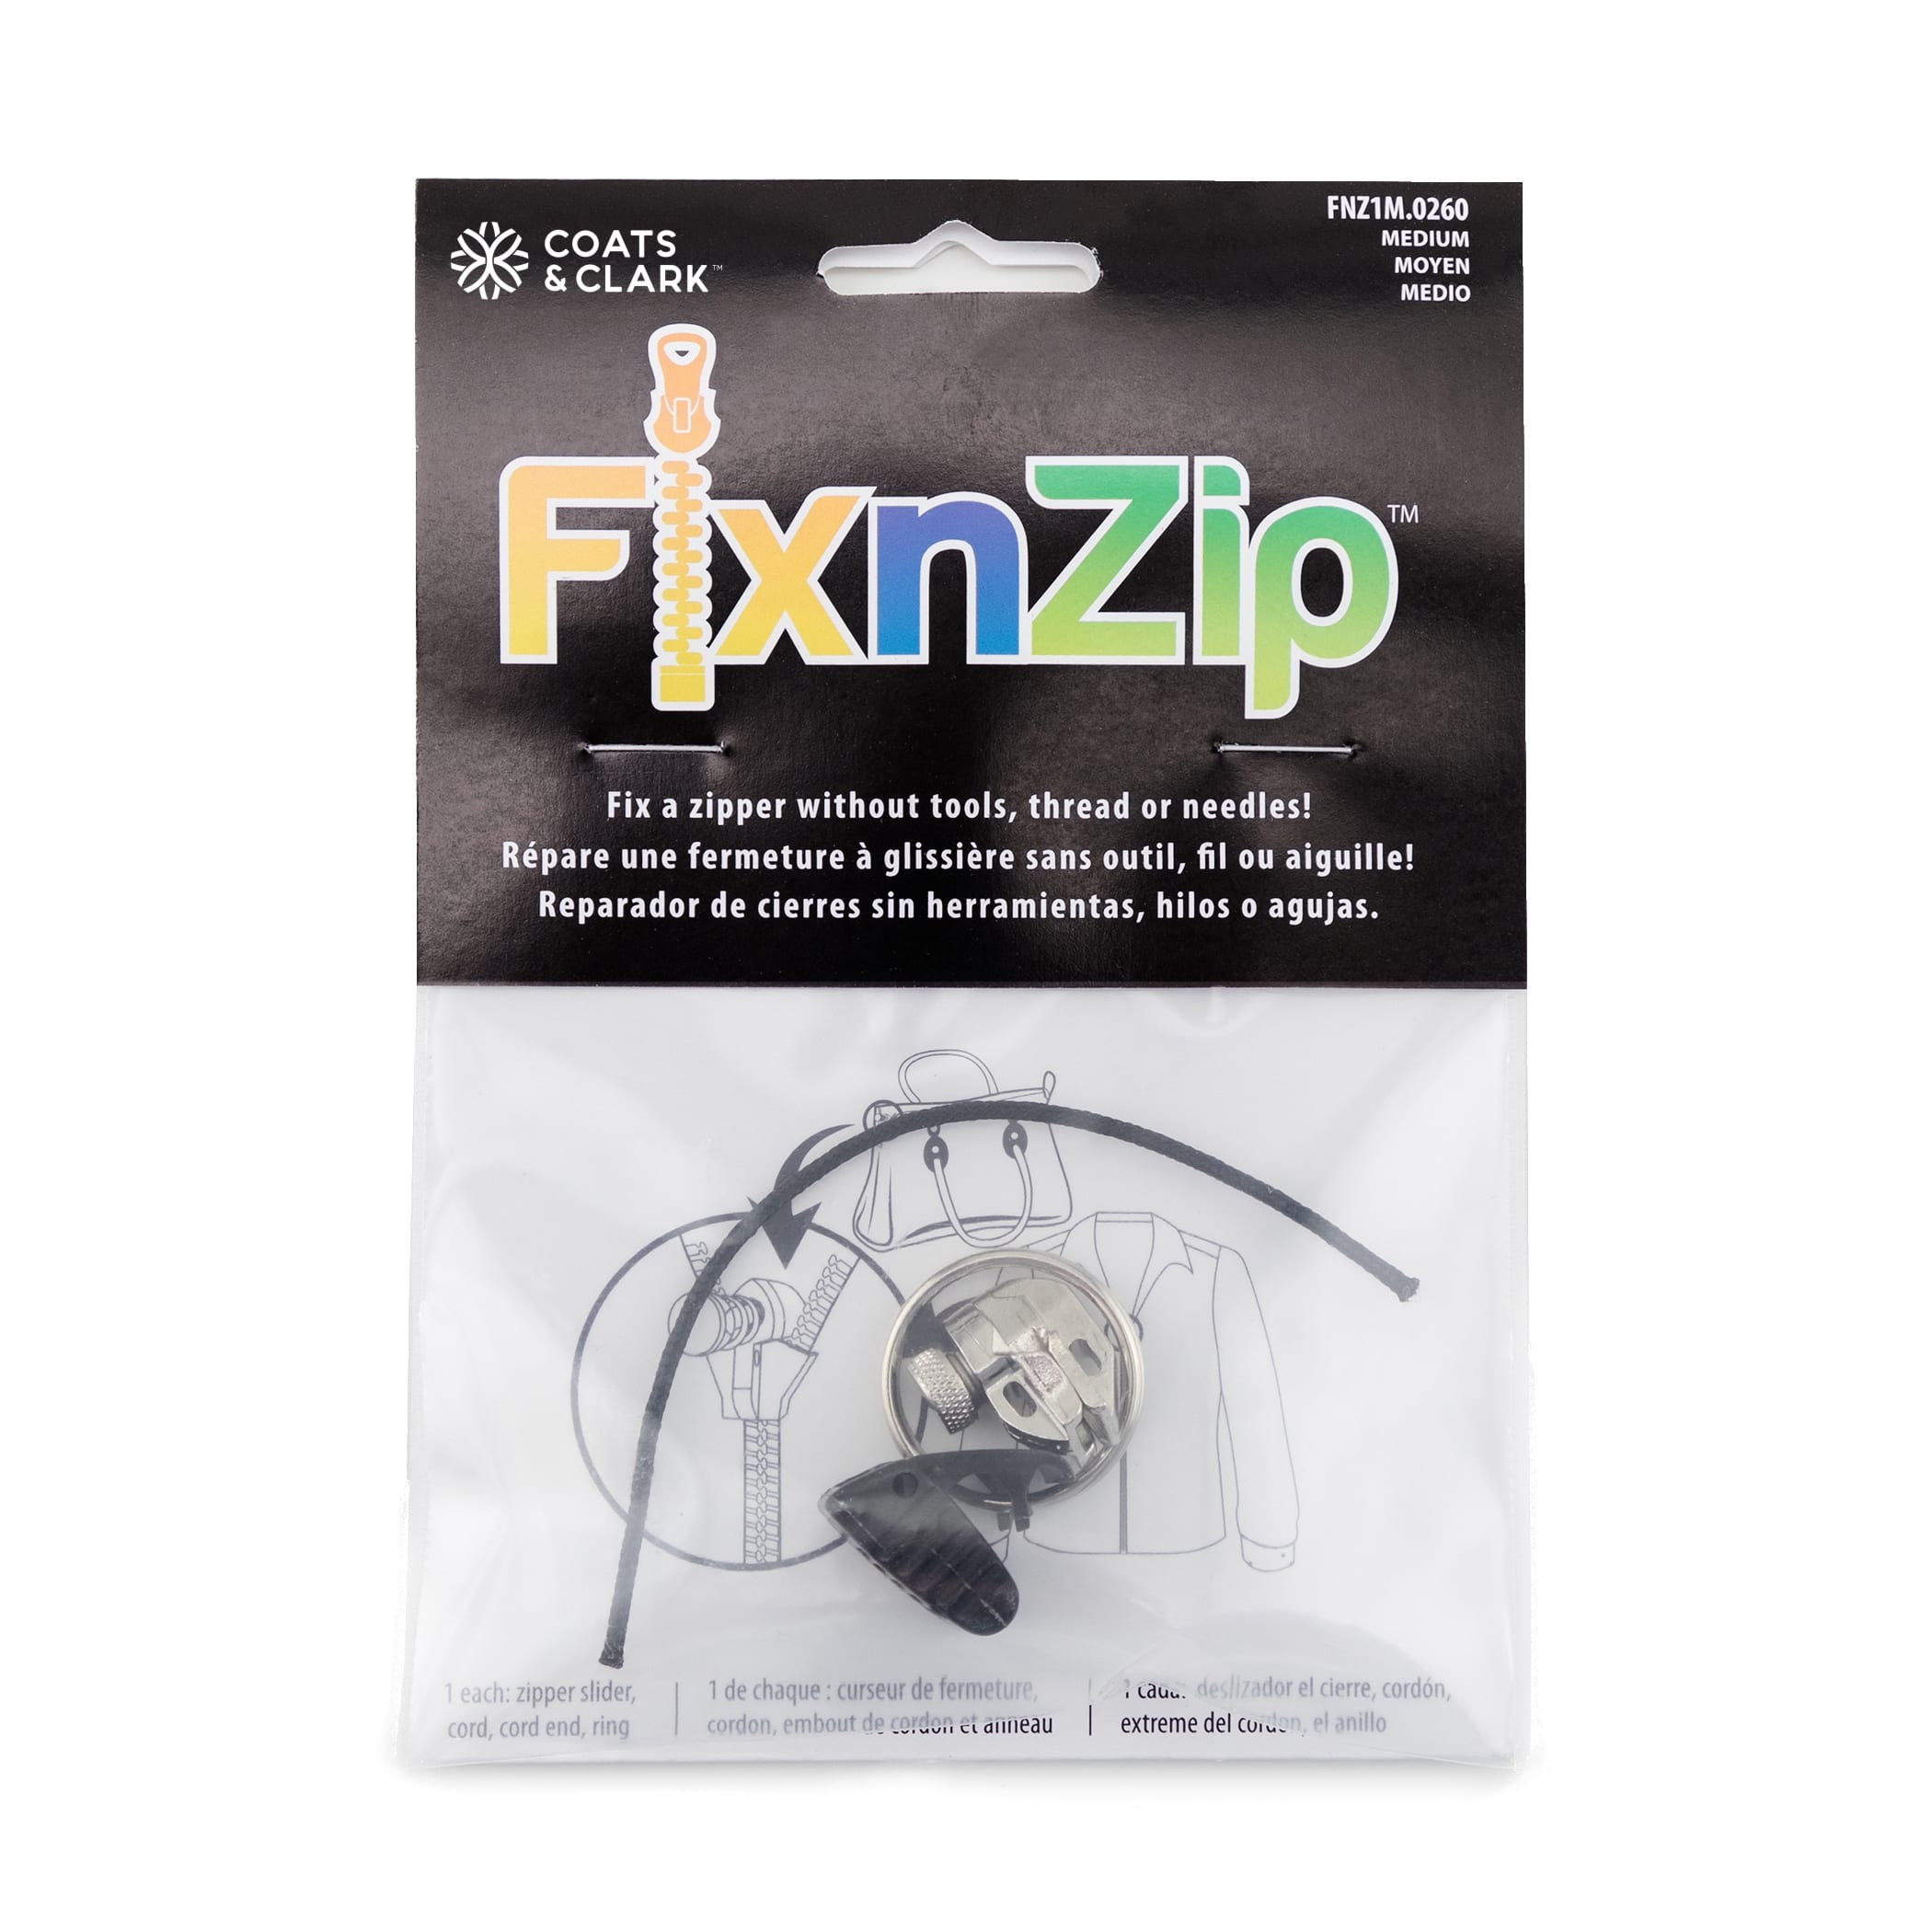 Universal Zipper Repair Replacement Fix Broken Kit - 6 Pack (Black